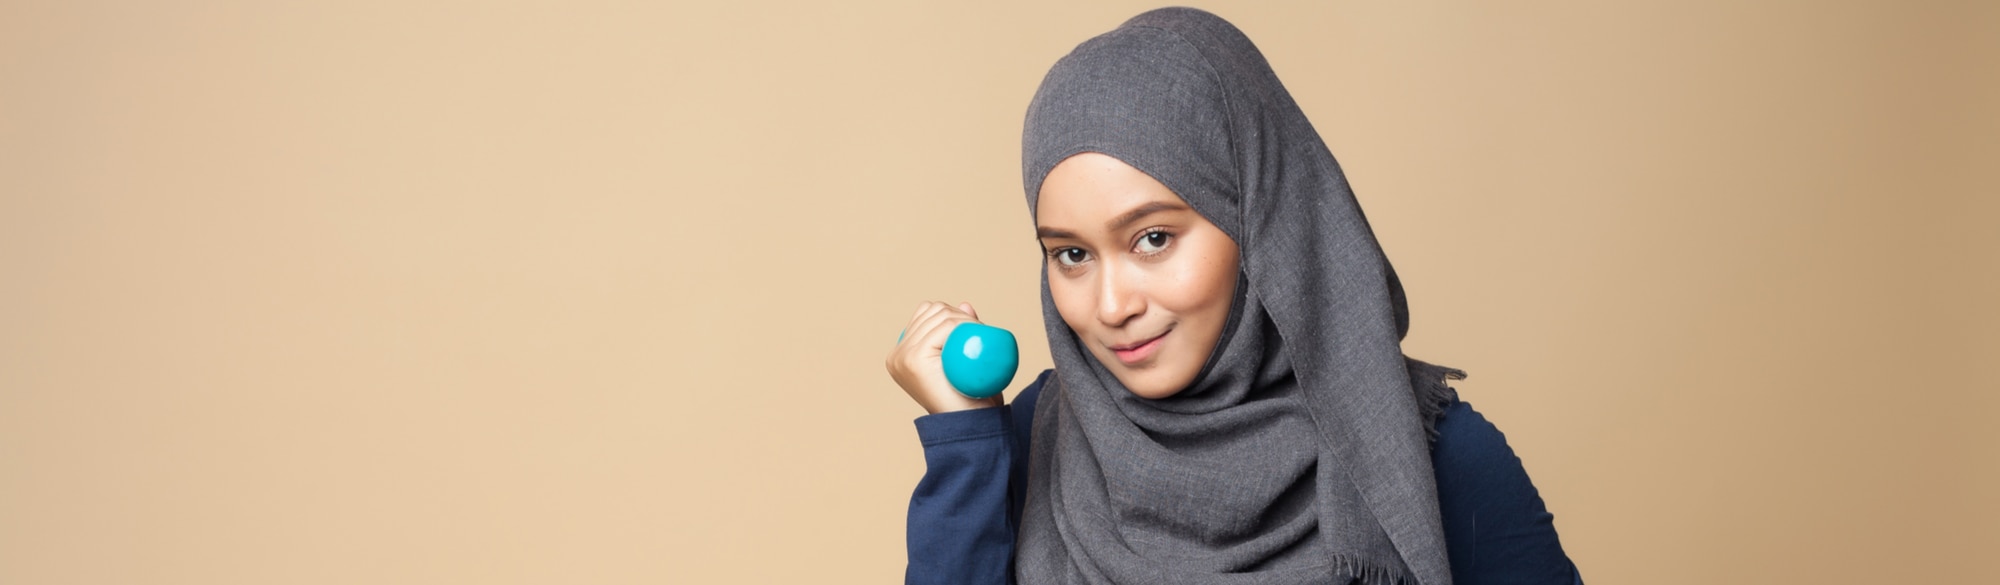 Manfaat Shampo Clear Hijab Text